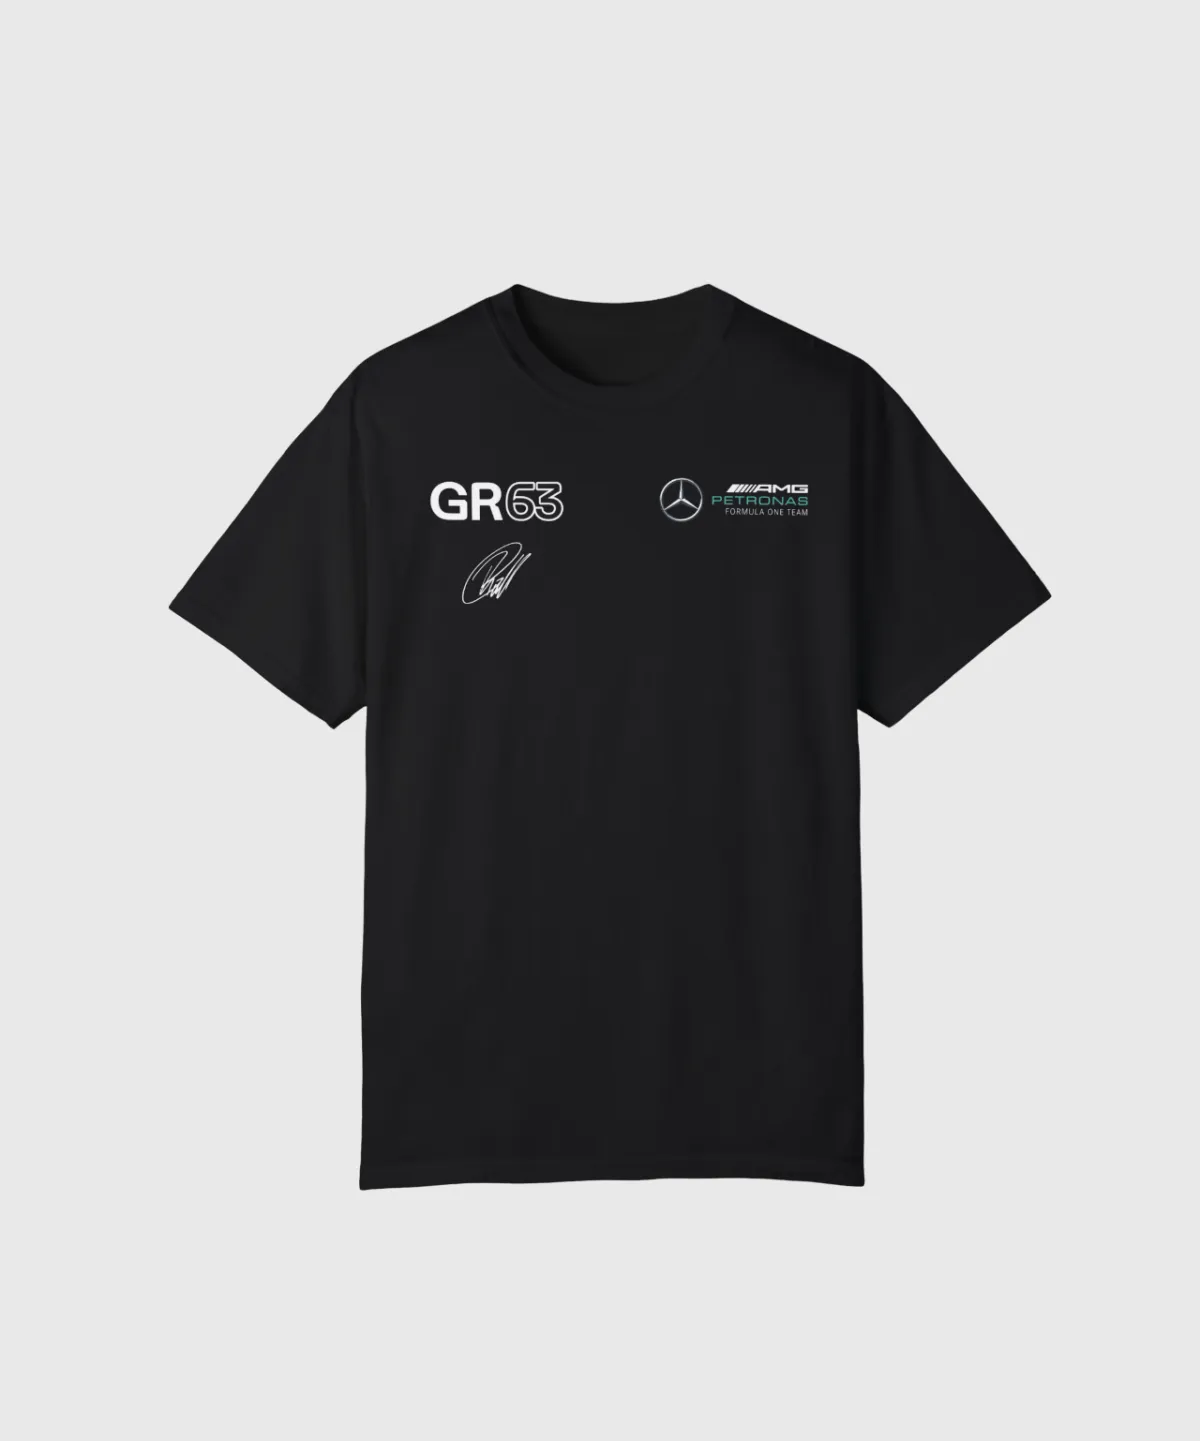 F1 Tシャツ | Formula 1 T シャツ販売